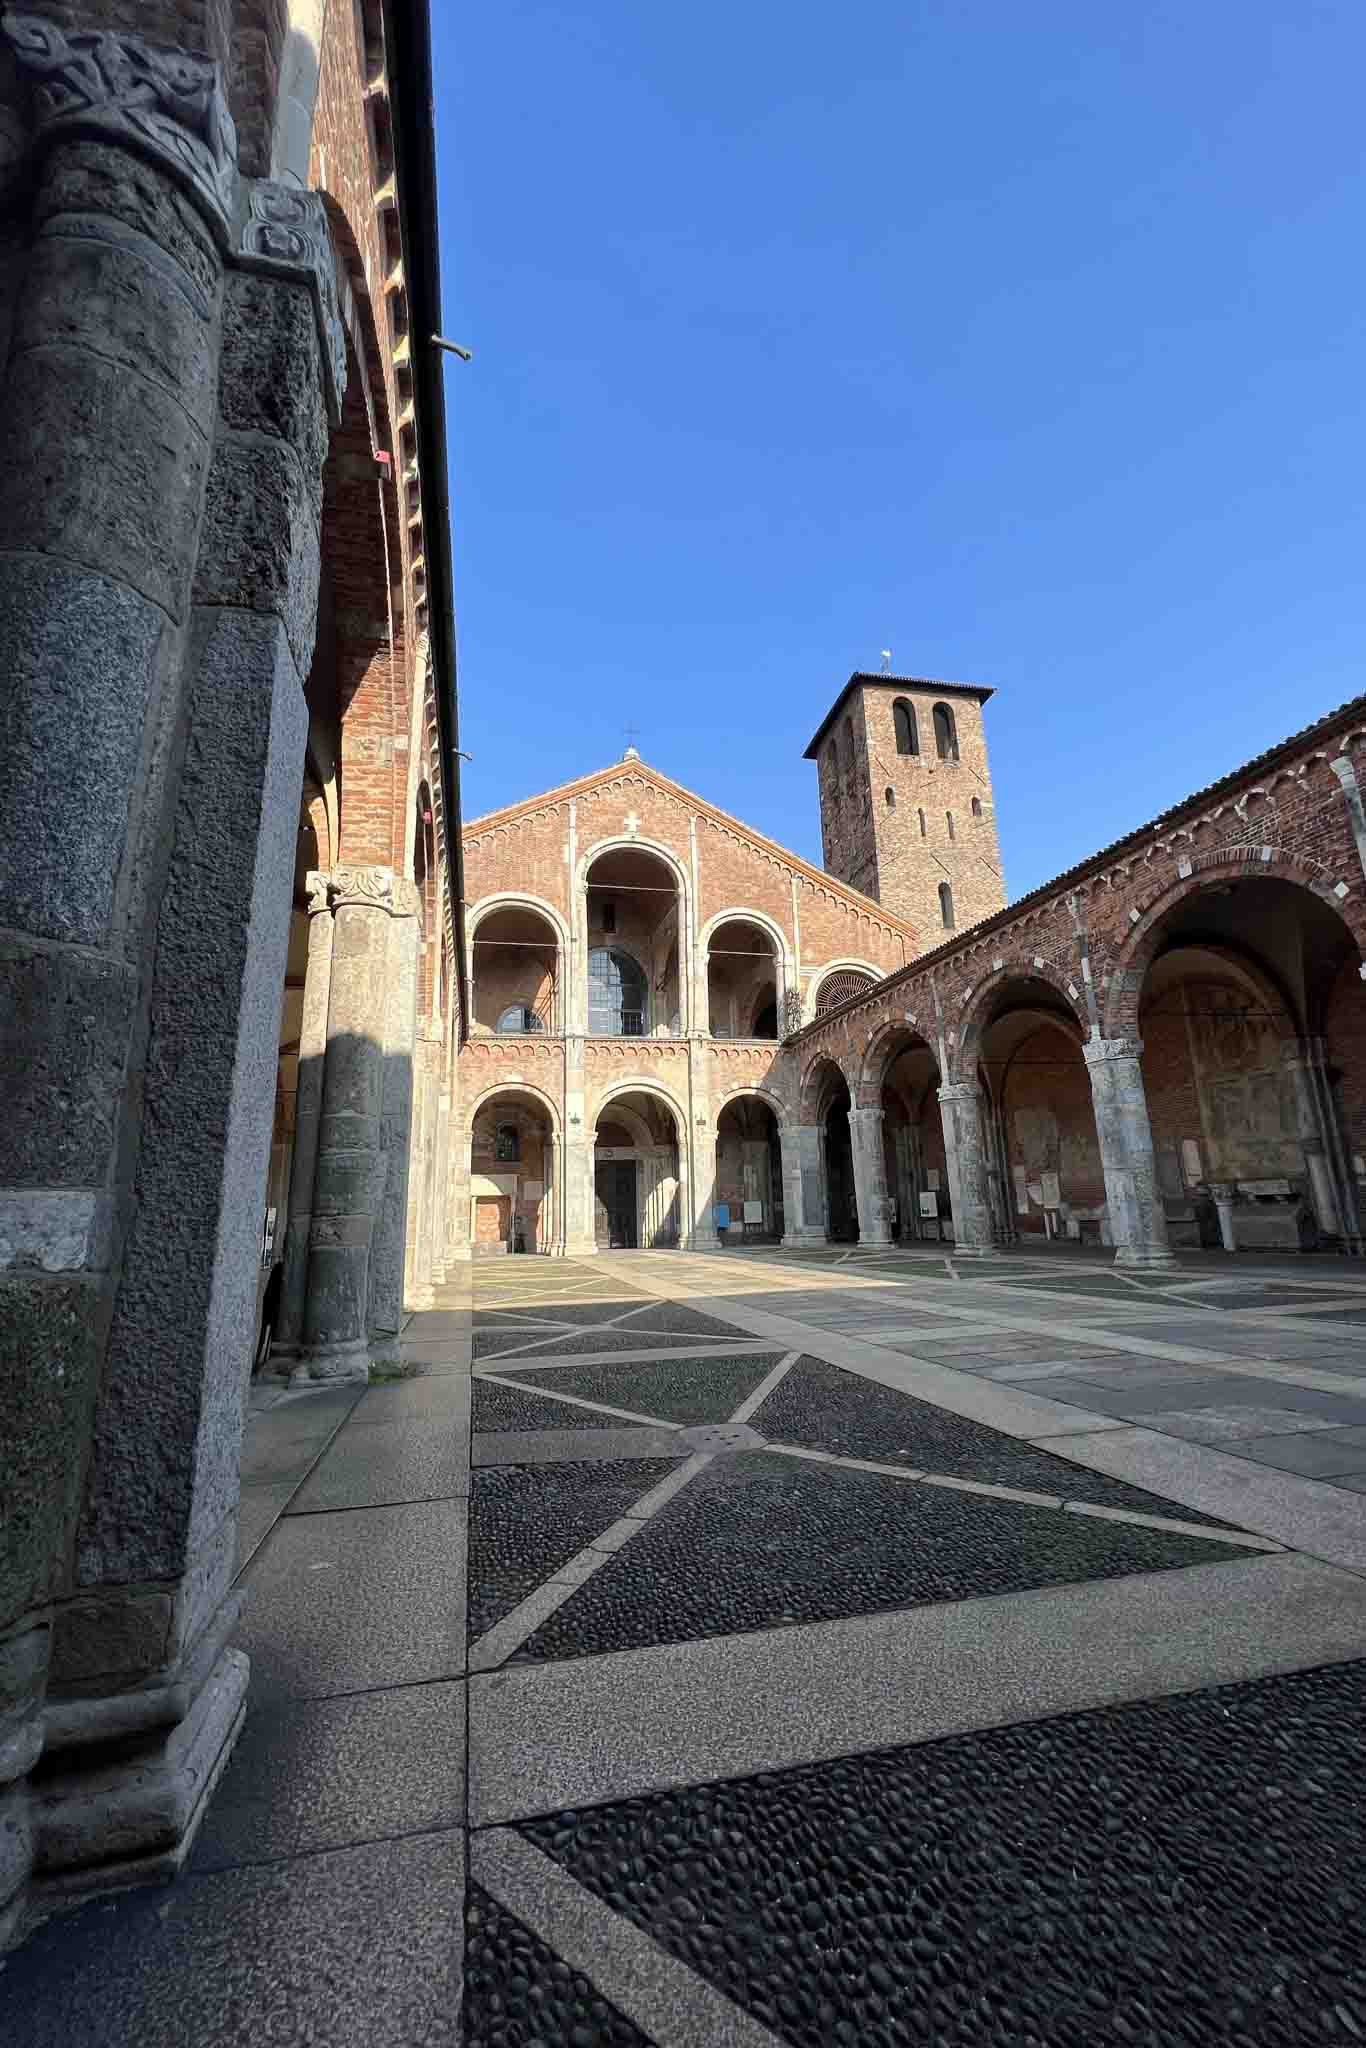 Roteiro de Igrejas: o que fazer em Milão em uma segunda-feira?